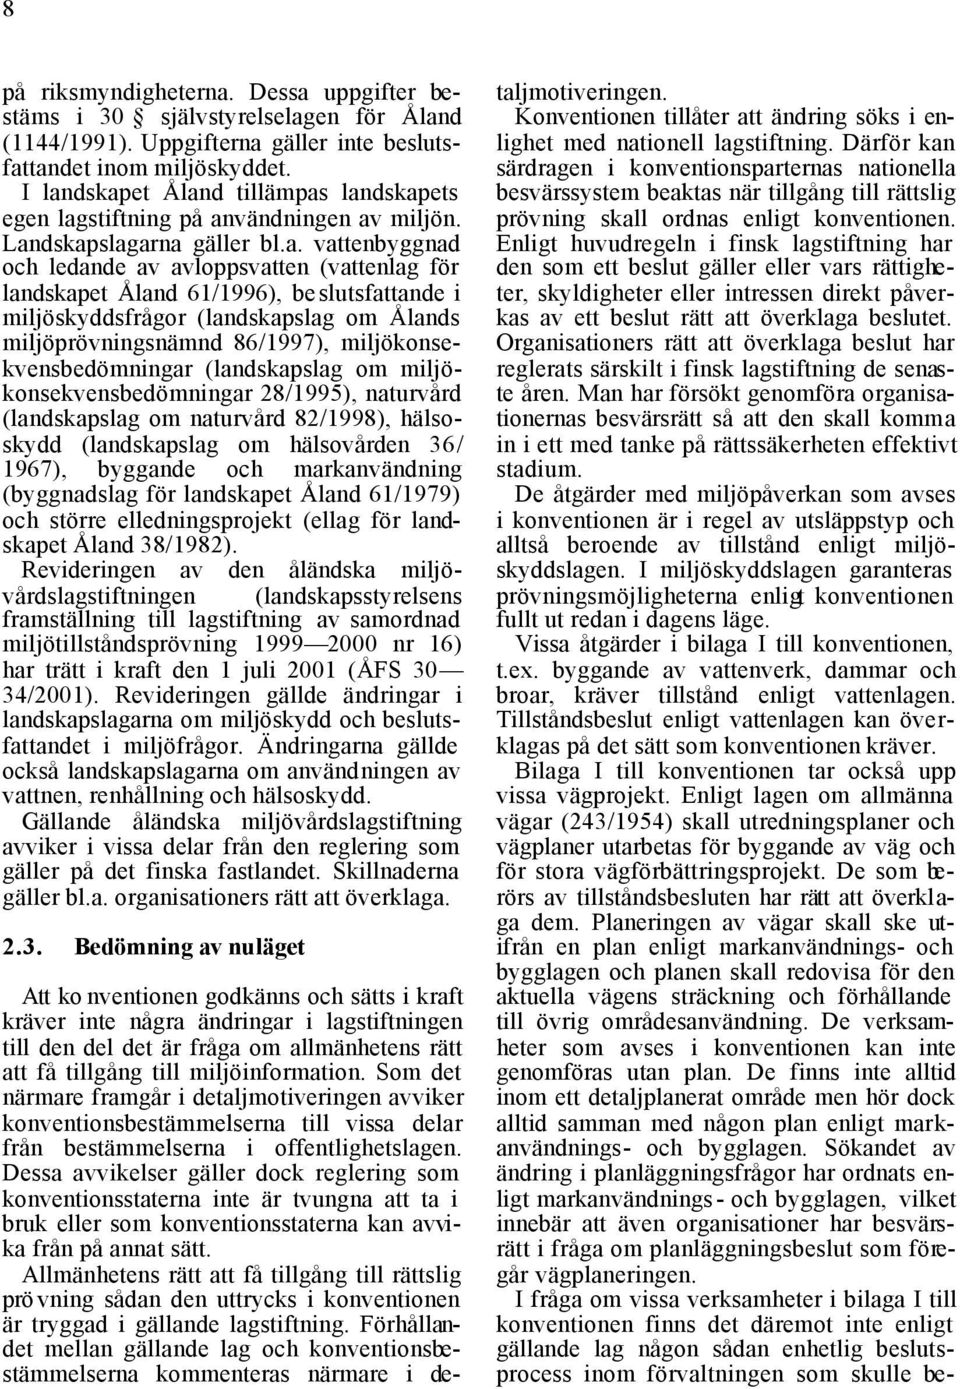 61/1996), beslutsfattande i miljöskyddsfrågor (landskapslag om Ålands miljöprövningsnämnd 86/1997), miljökonsekvensbedömningar (landskapslag om miljökonsekvensbedömningar 28/1995), naturvård